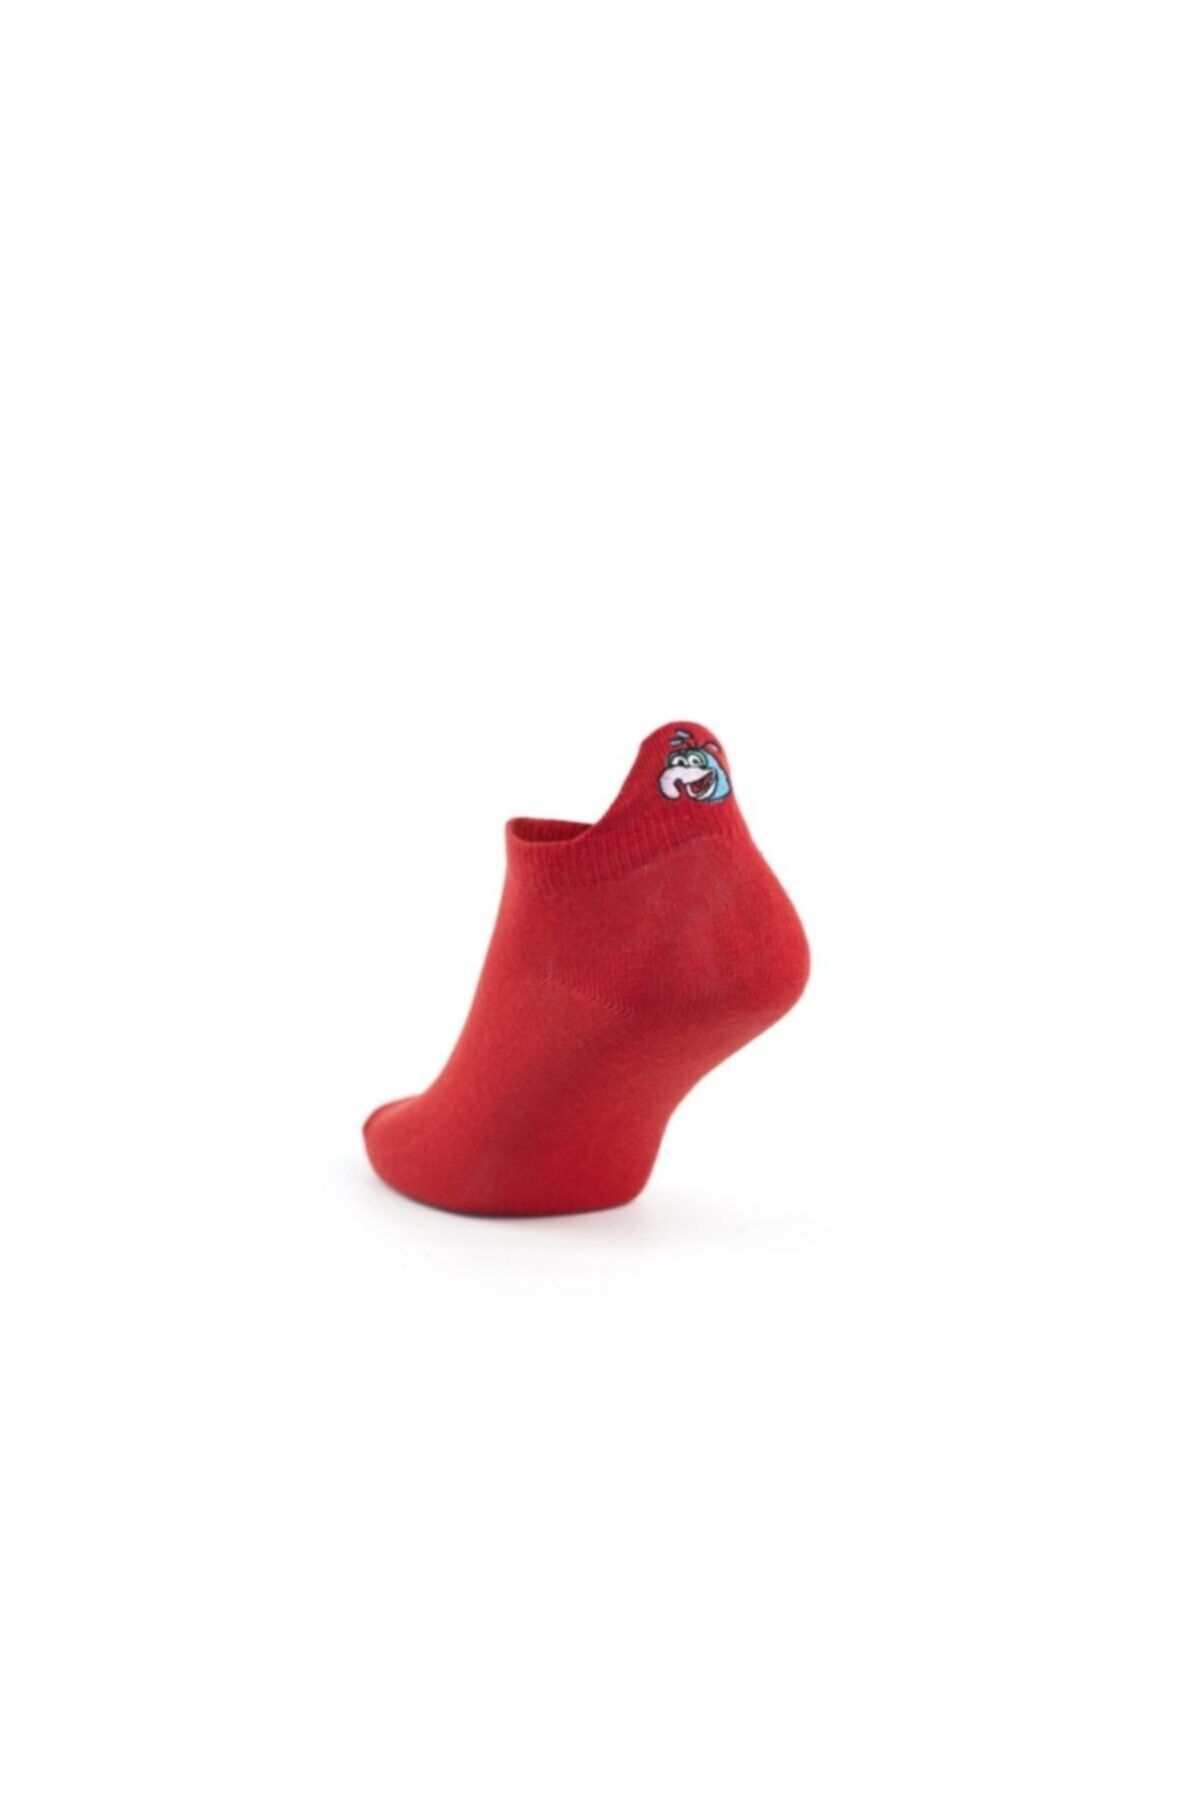 pazariz Unisex Kırmızı Emojili Çorap 2 Li